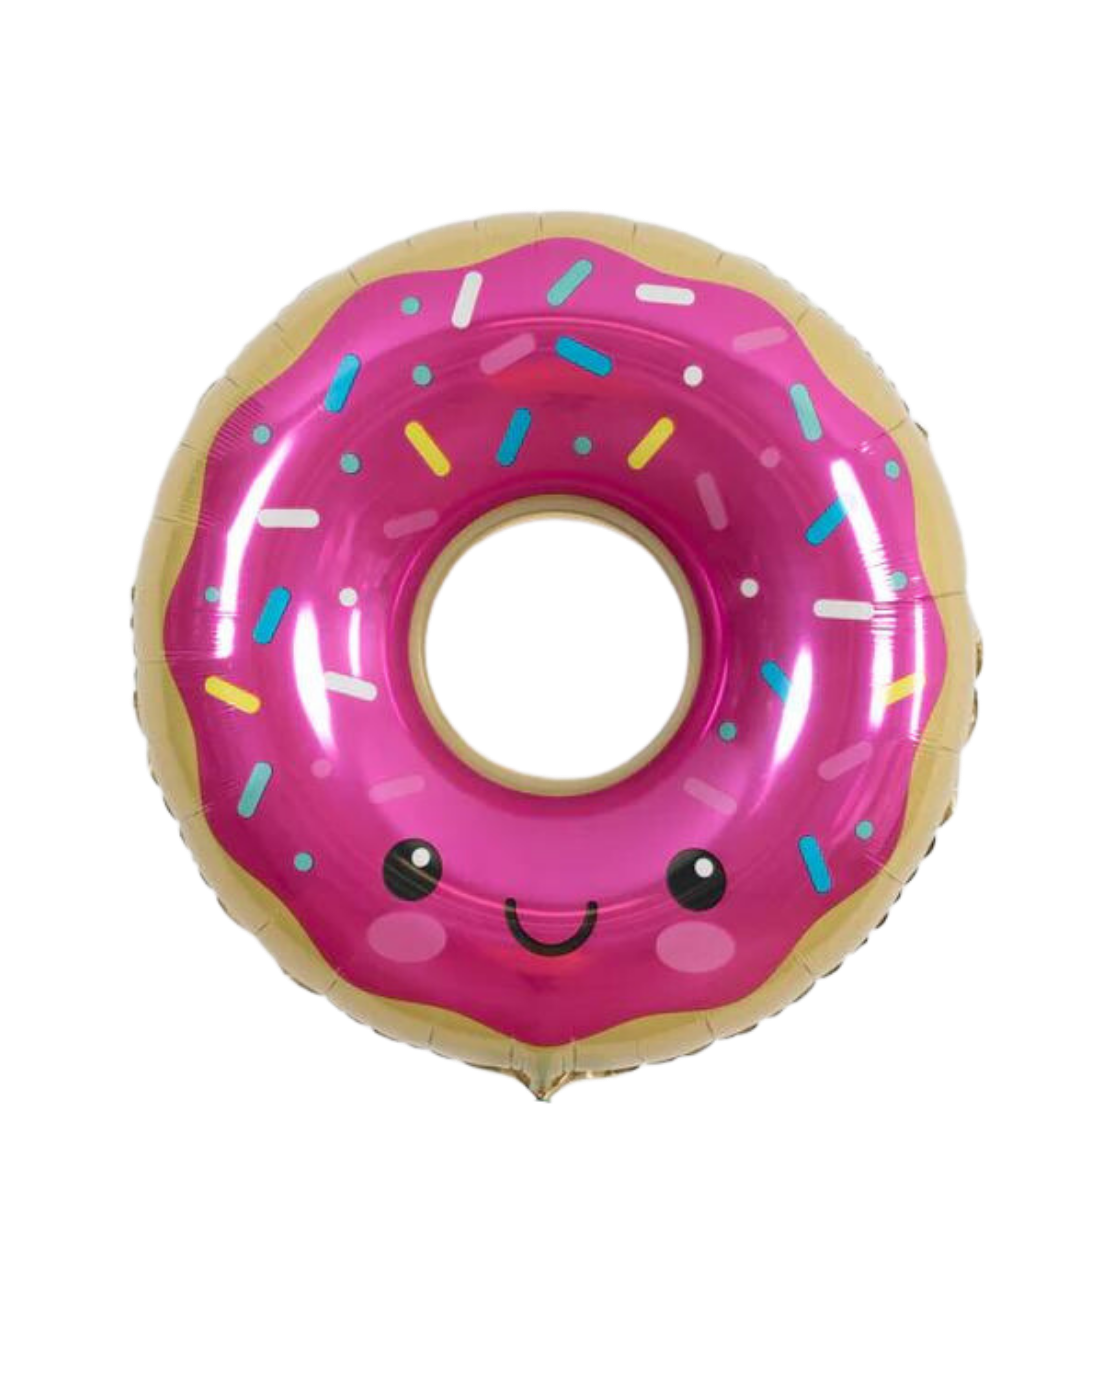 27" Sprinkle Donut